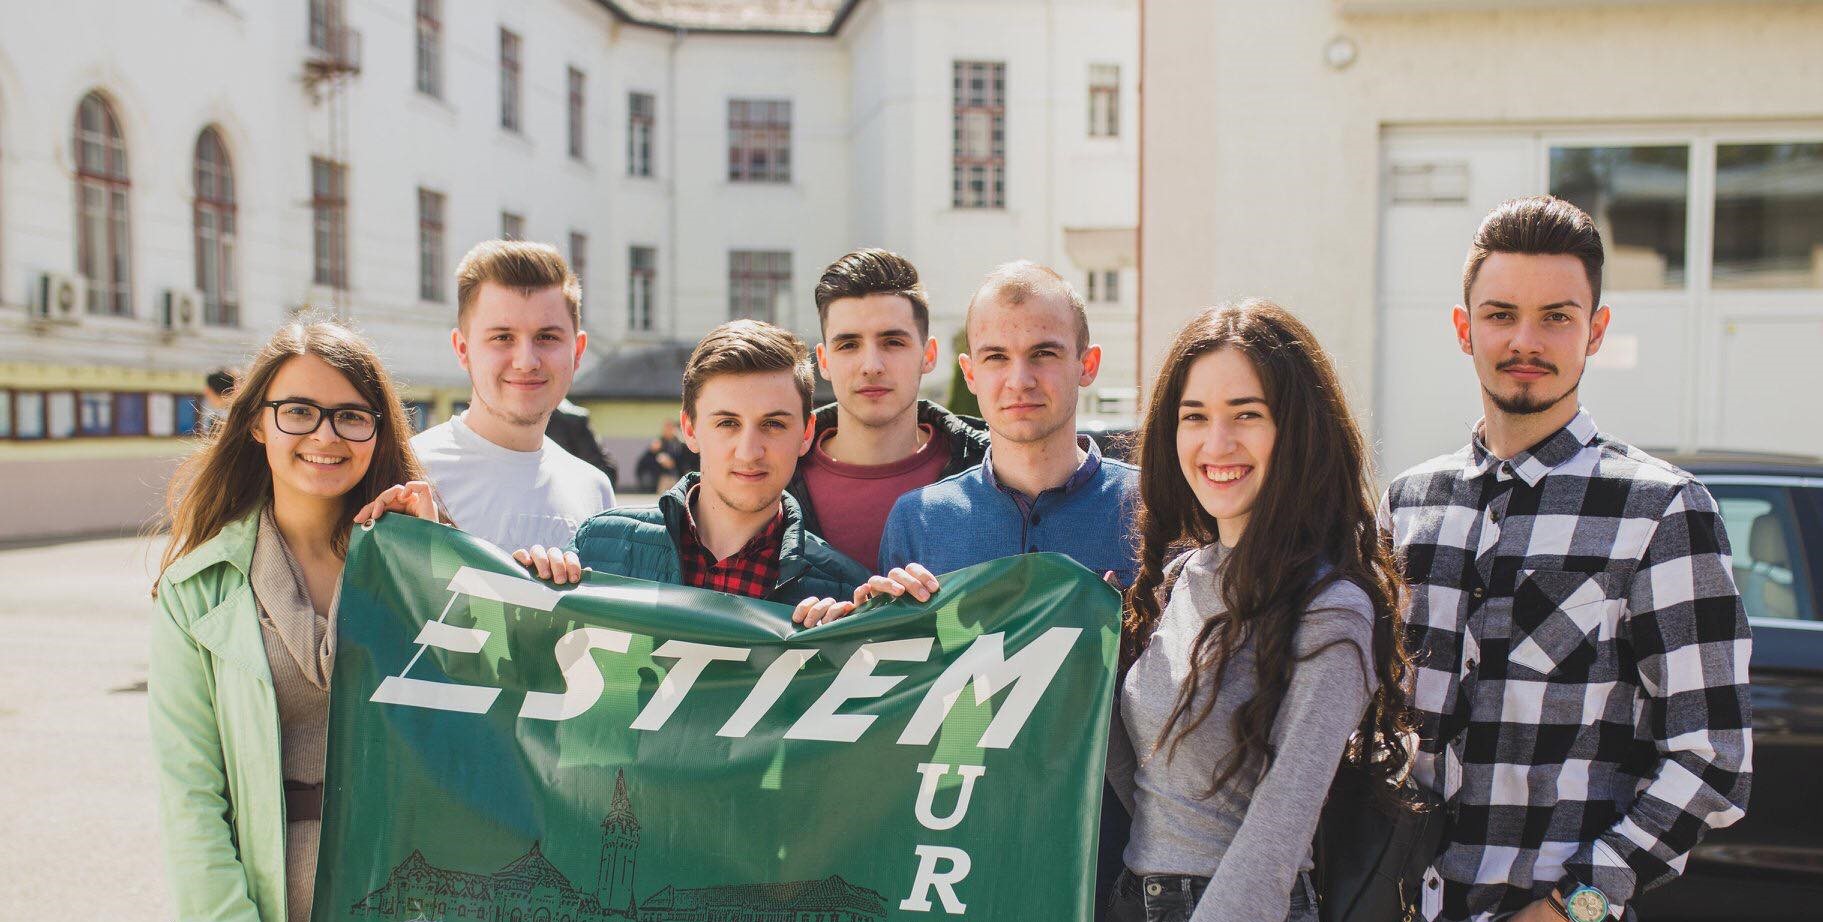 Studenți europeni la inginerie industrială și management, la UMFST Târgu Mureș